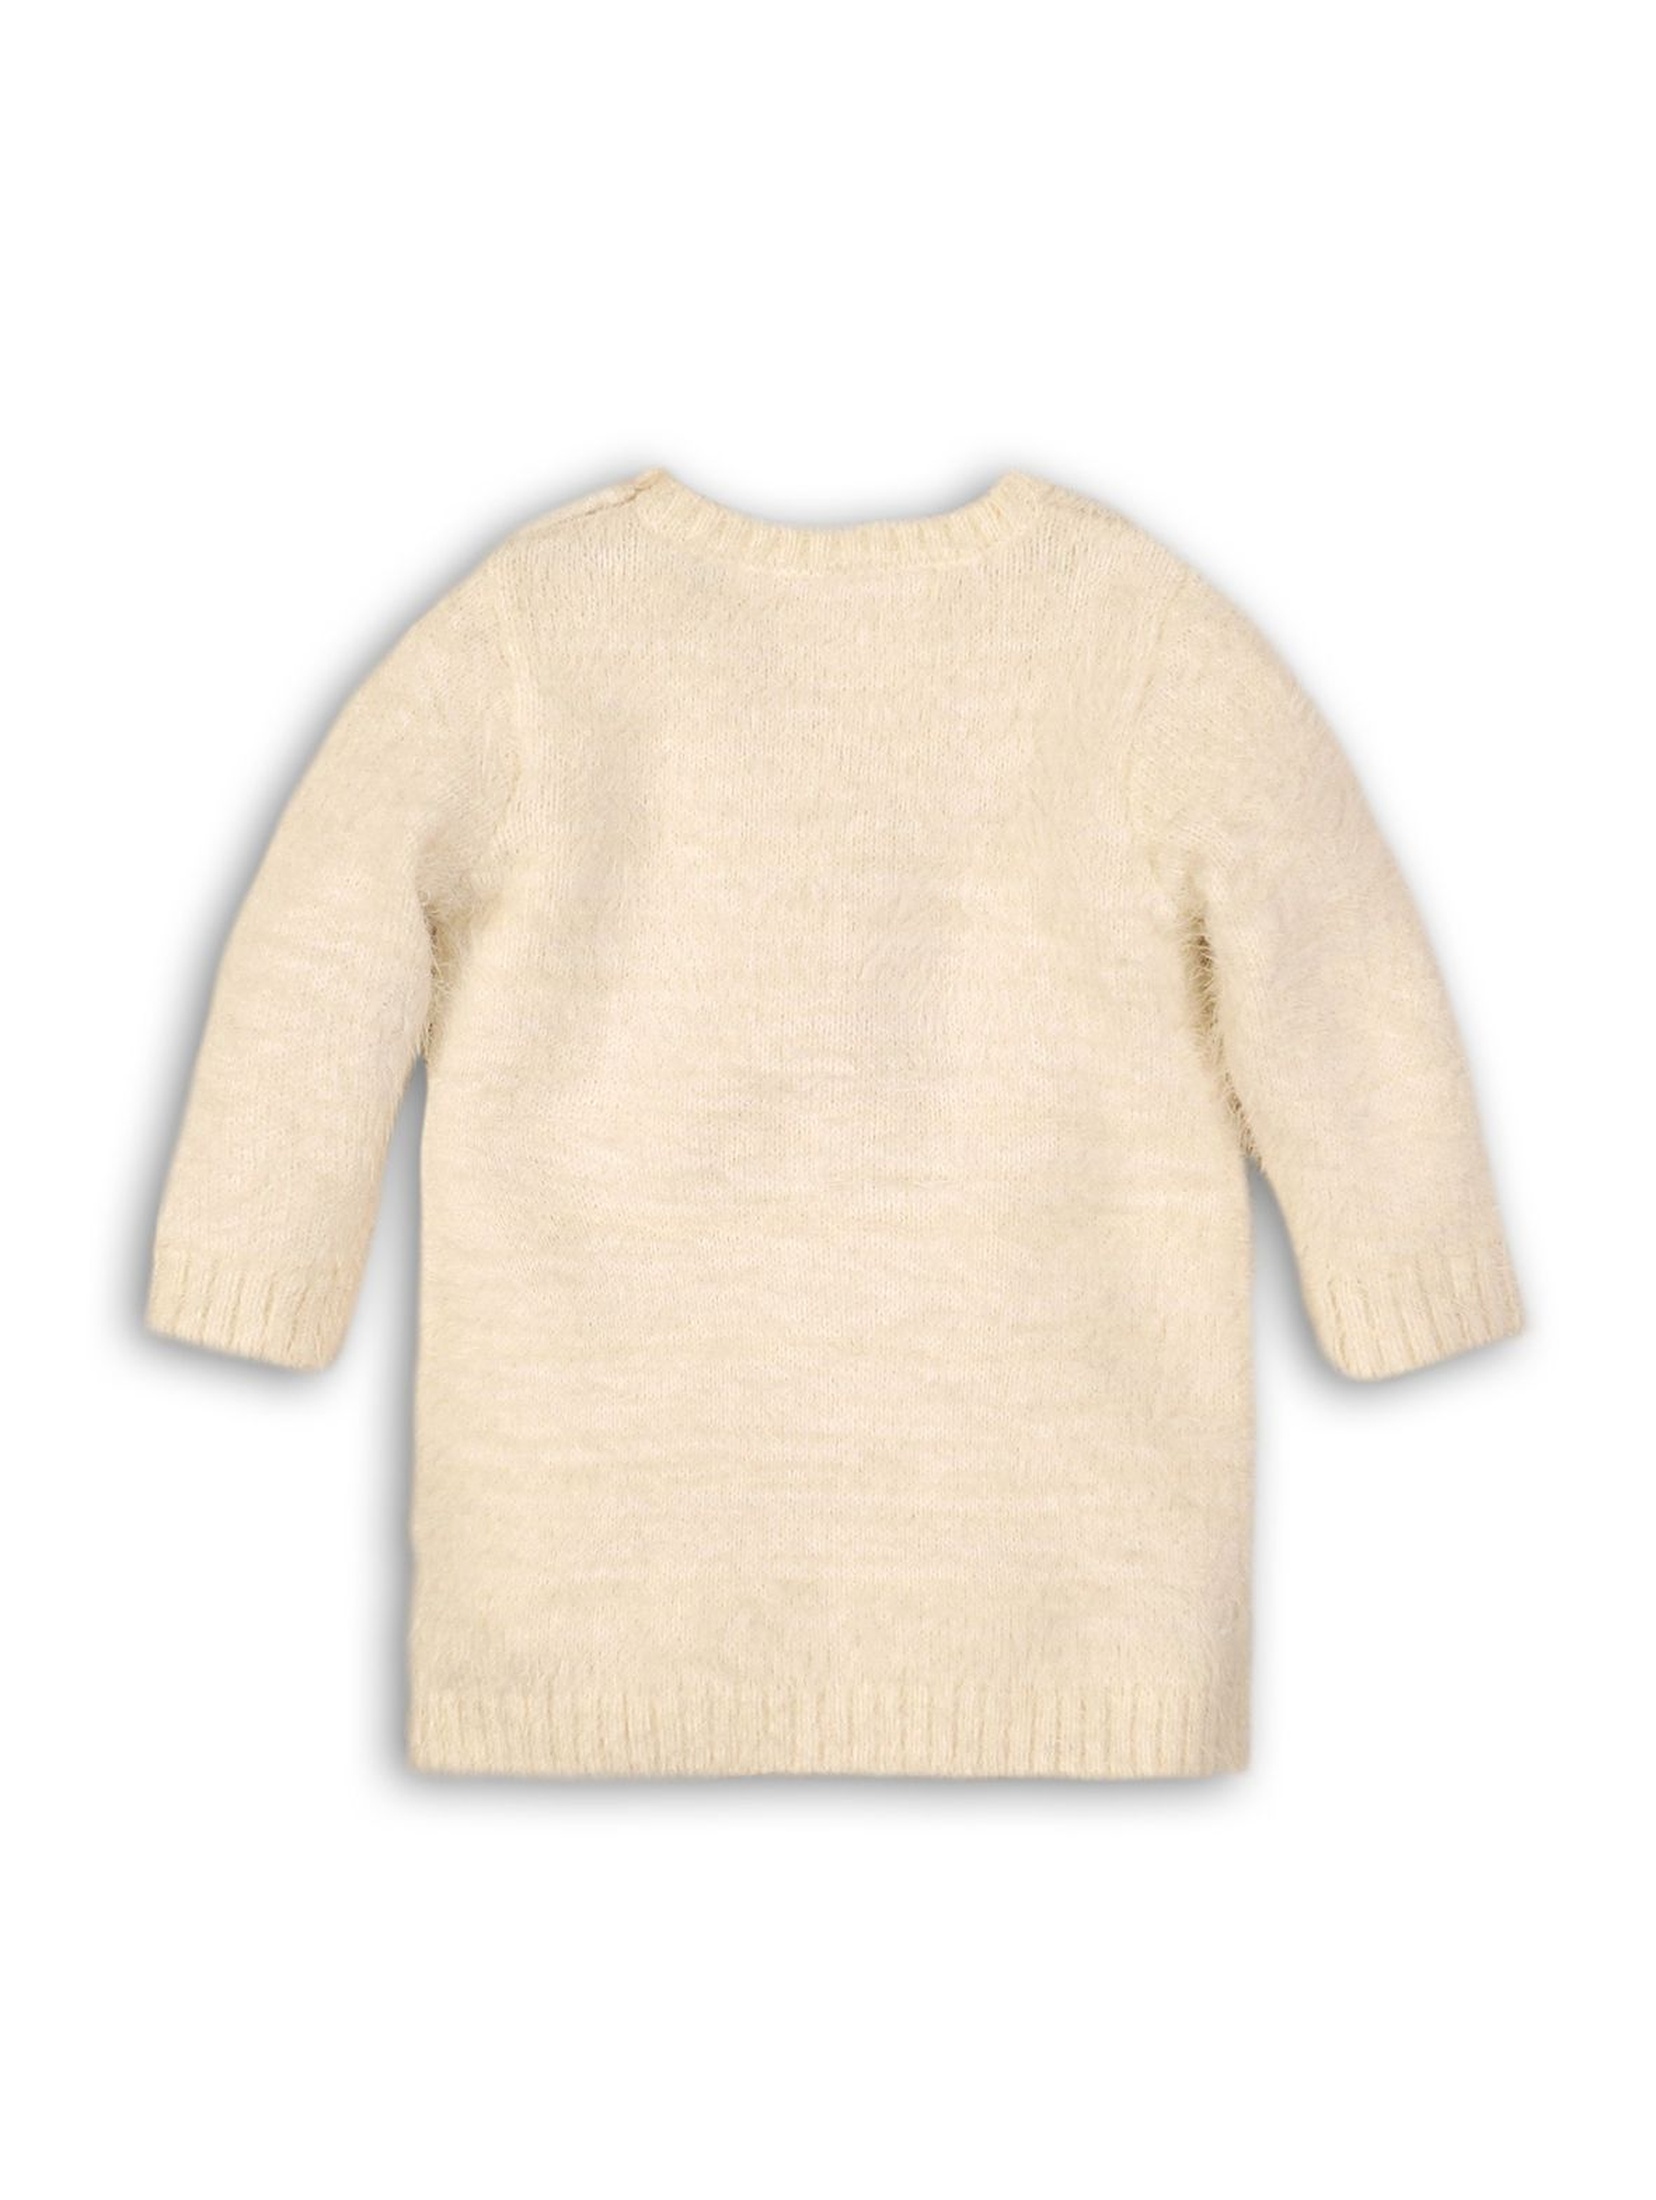 Swetrowa tunika dla dziewczynki- sarenka